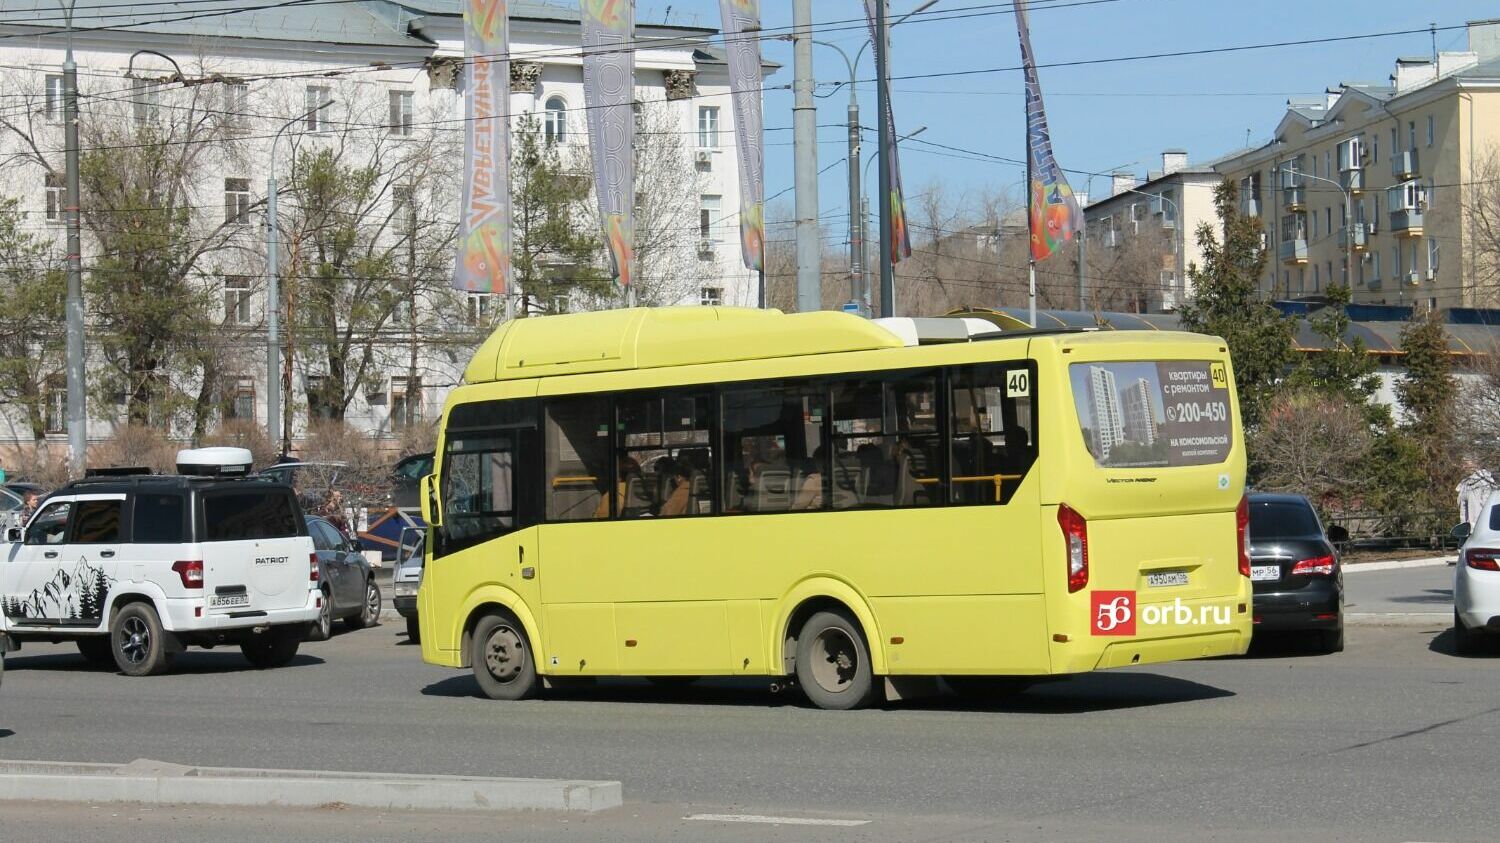 Автобусы Вектор введены в эксплуатацию летом 2020 года